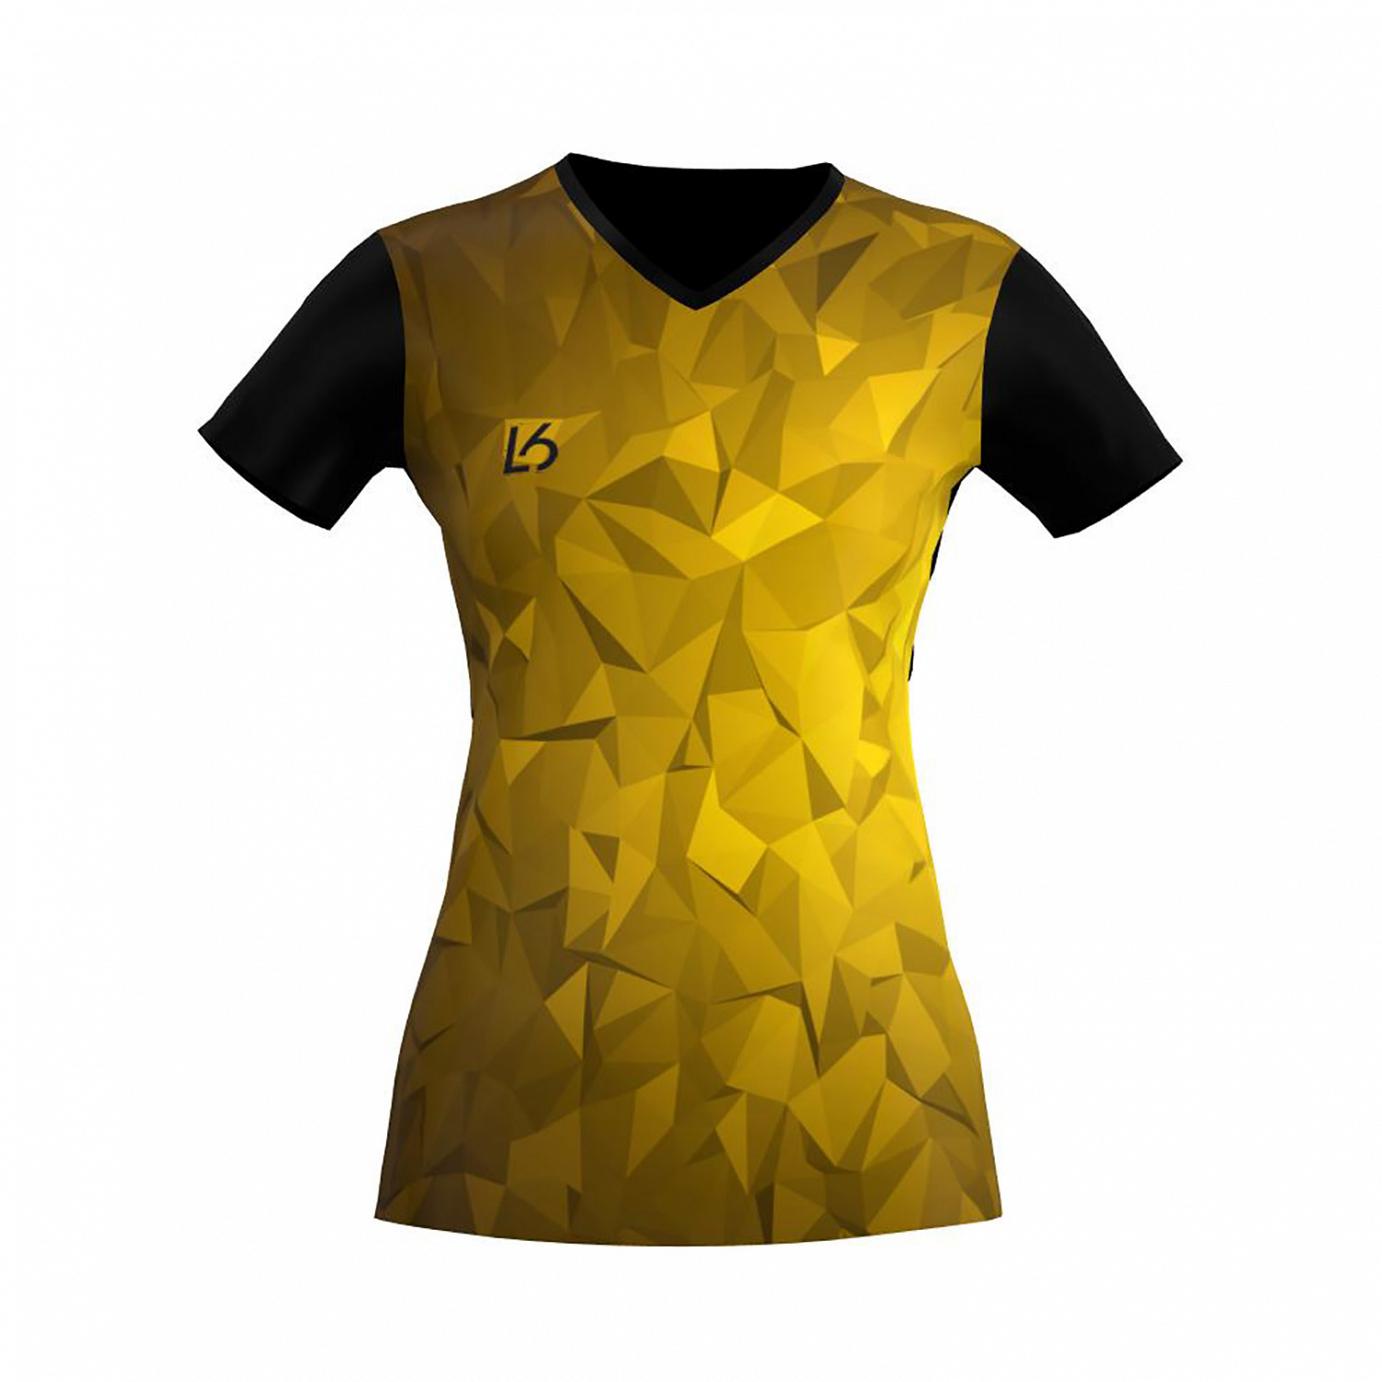 L6 V-Neck Trikot Women - Polygon Yellow - Badminton Shop Franken